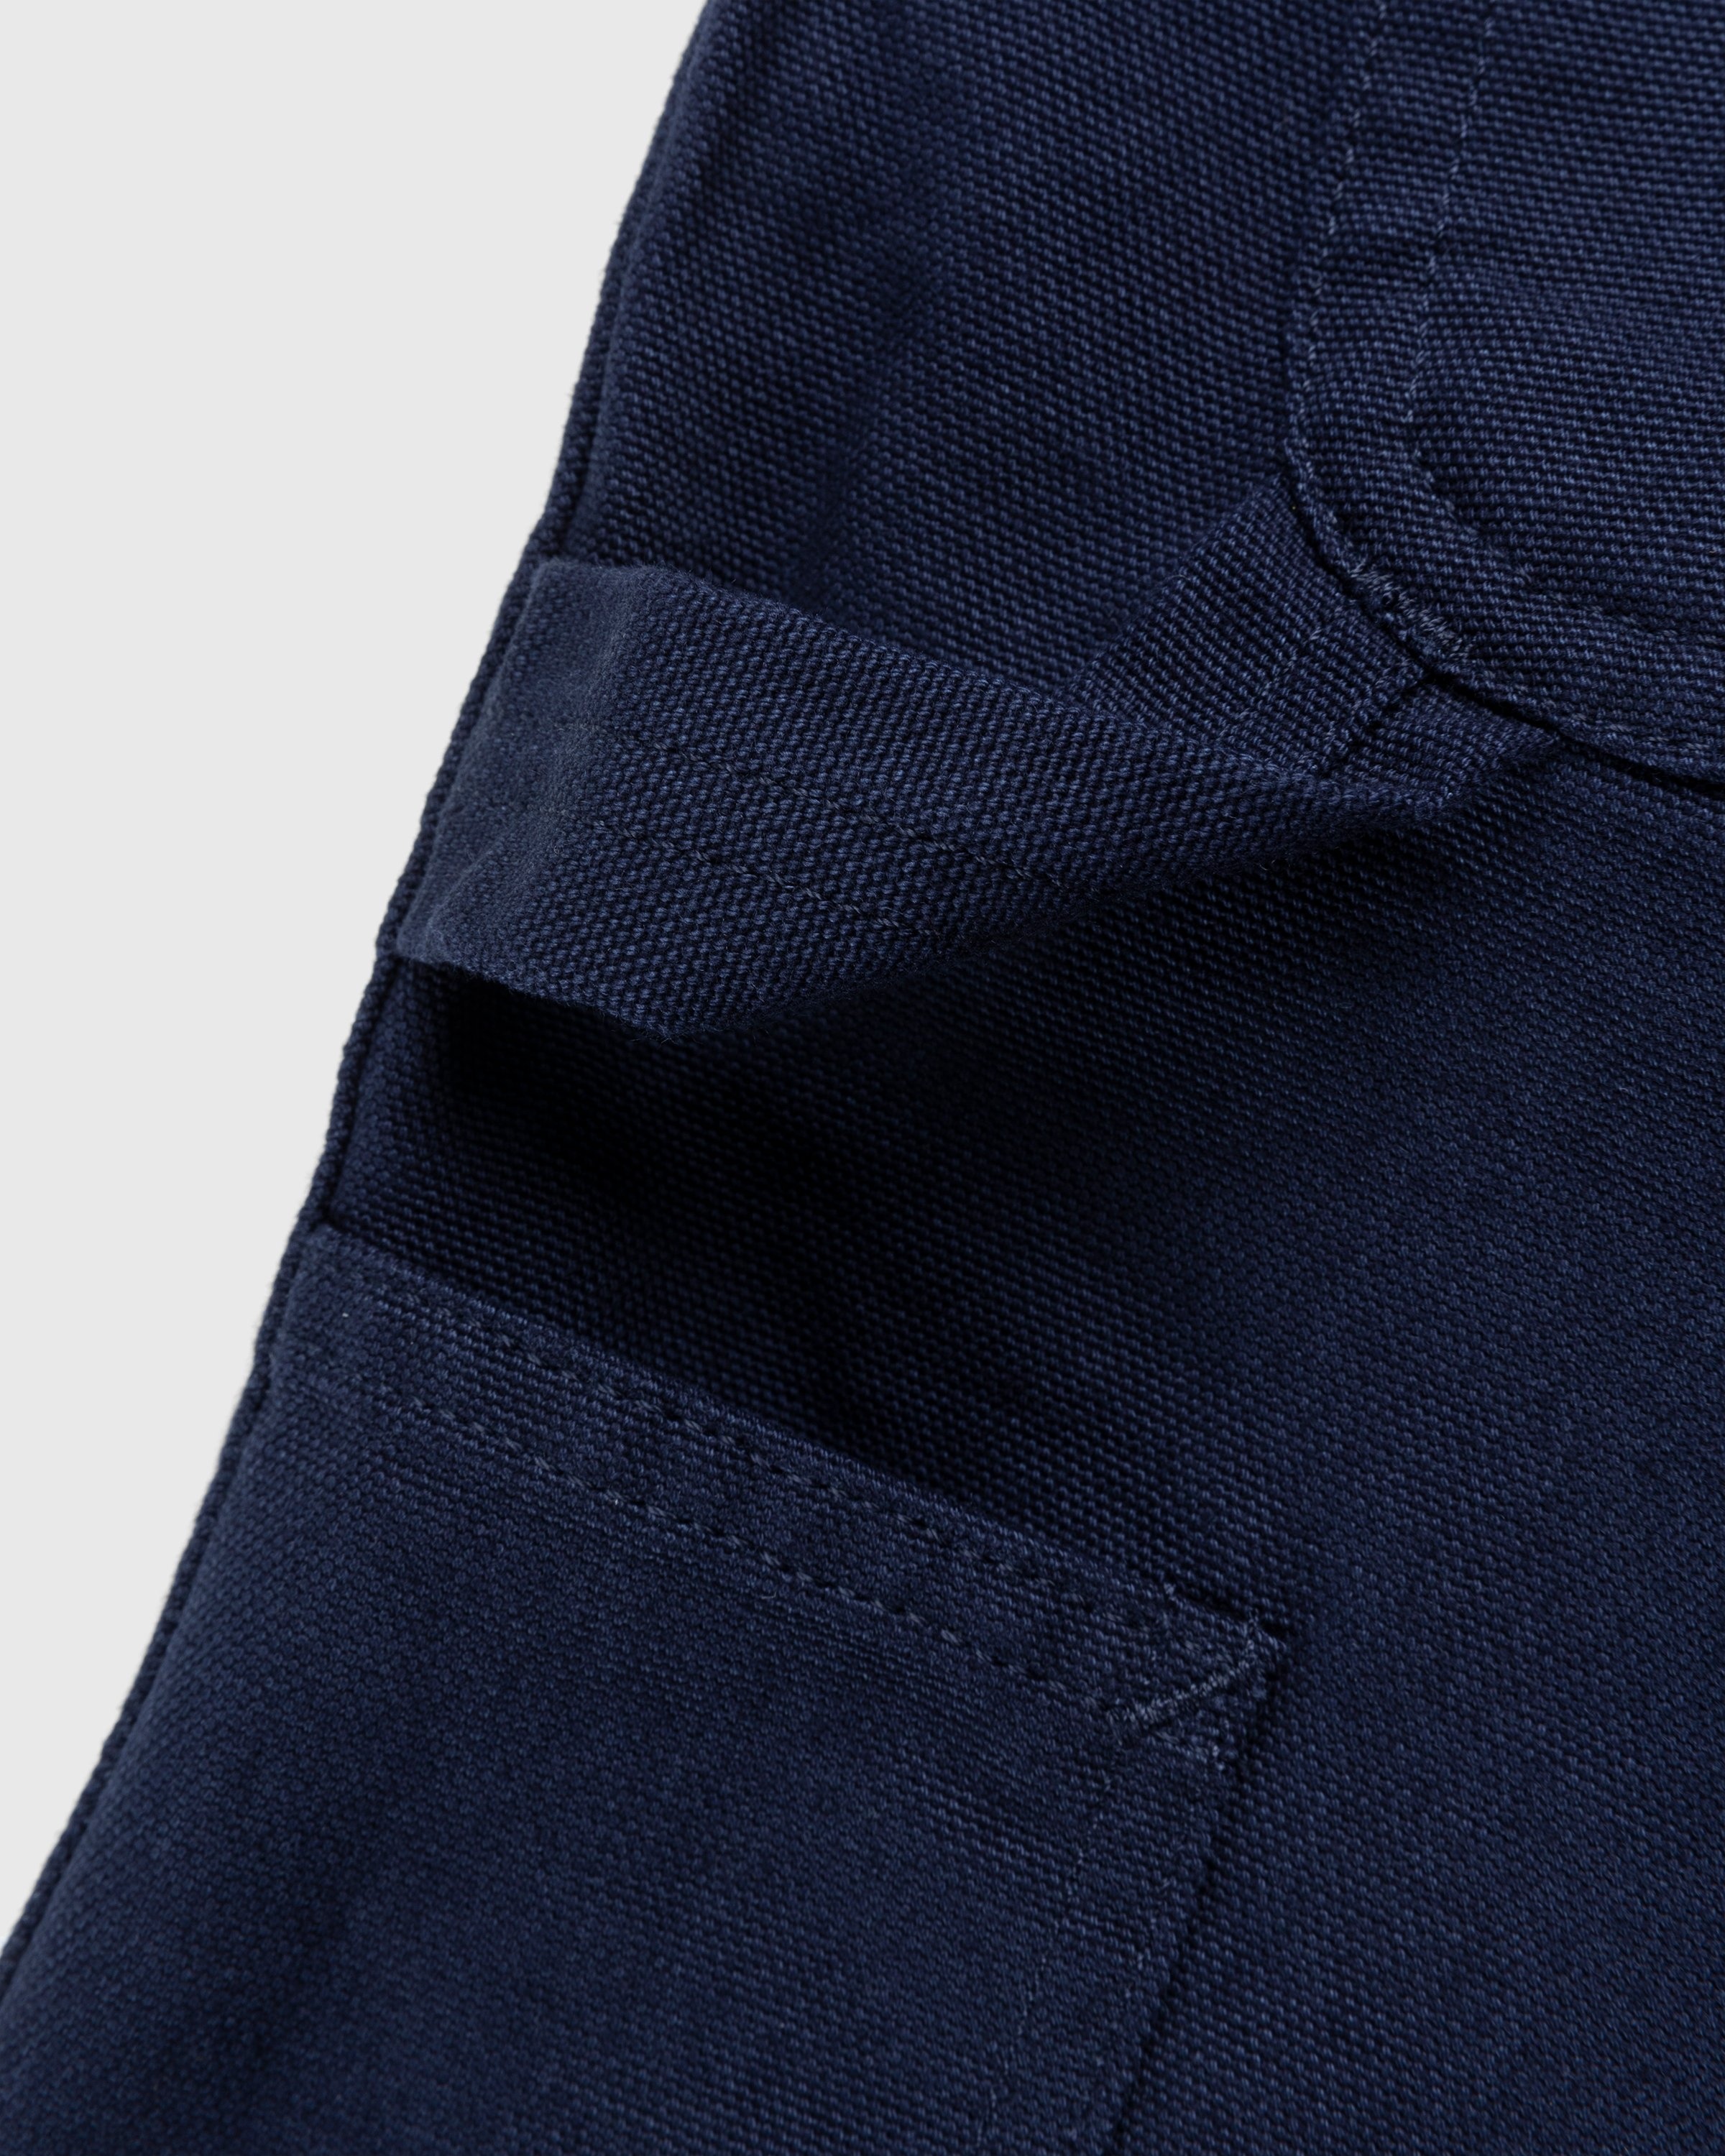 Carhartt WIP – Single Knee Short Dark Navy - Shorts - Black - Image 3